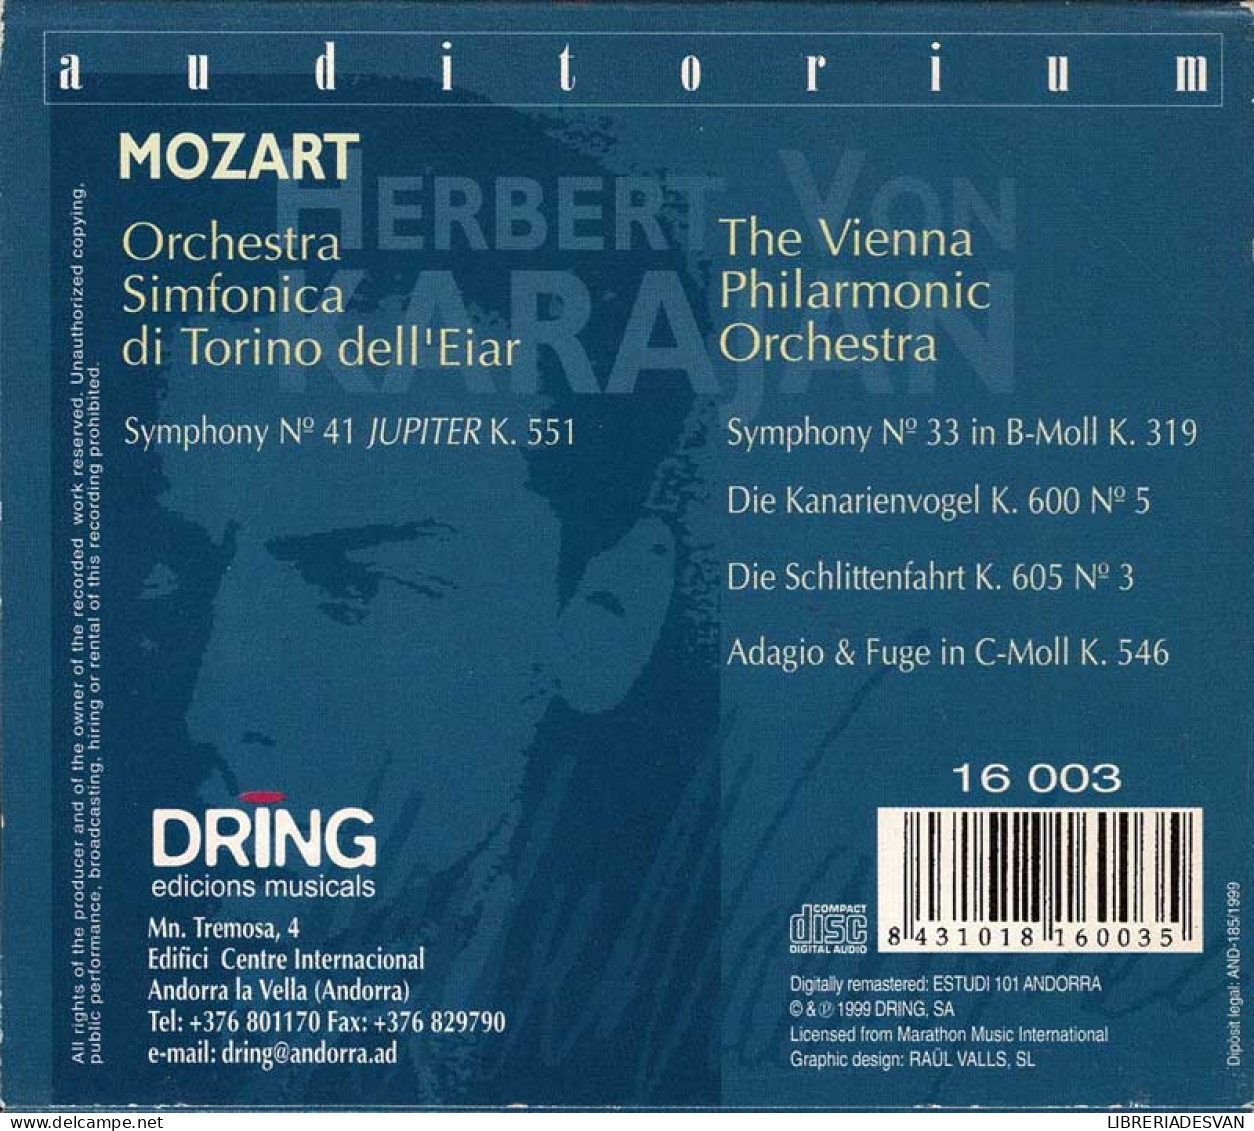 Herbert Von Karajan - Mozart. CD - Classique